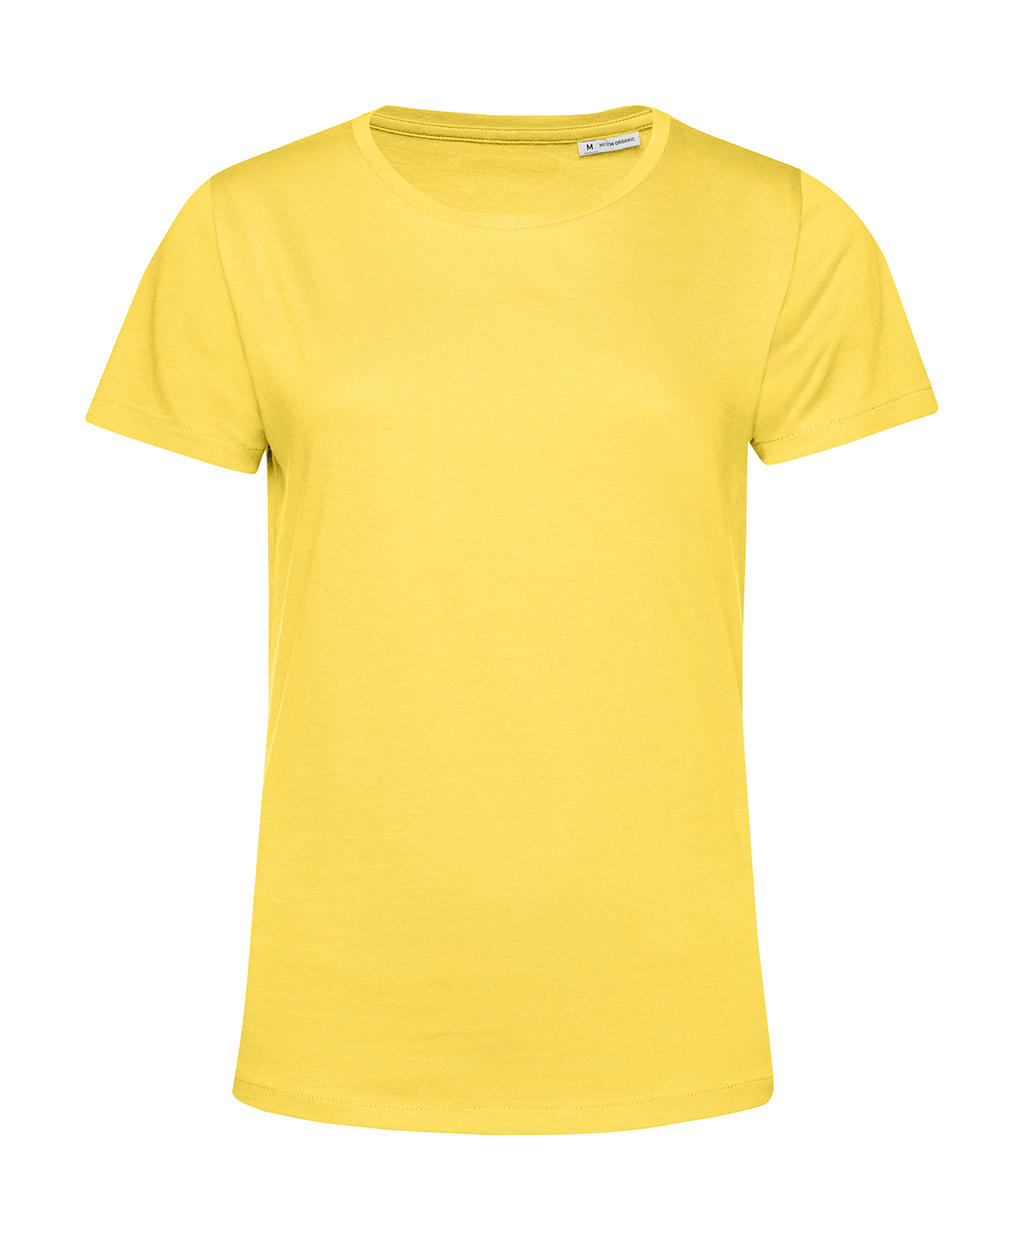 Tričko dámské BC Organic Inspire E150 - žluté, XL